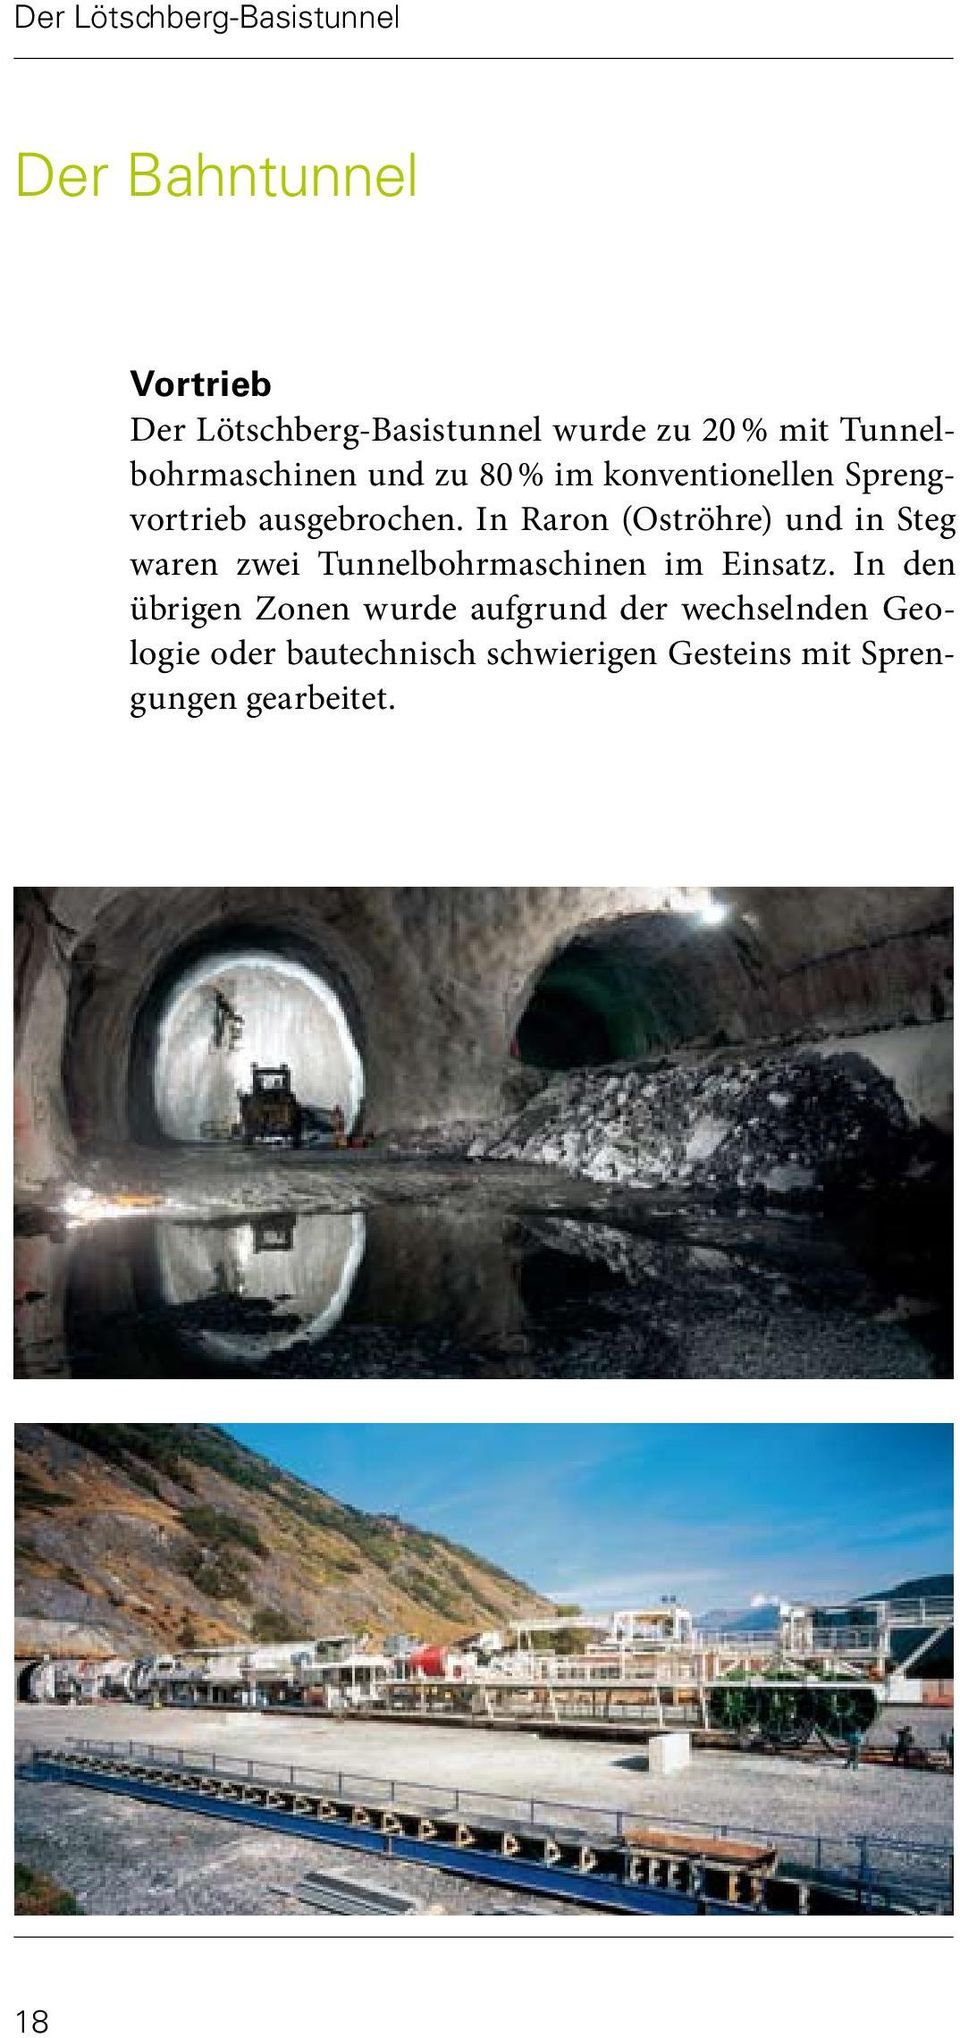 In Raron (Oströhre) und in Steg waren zwei Tunnelbohrmaschinen im Einsatz.